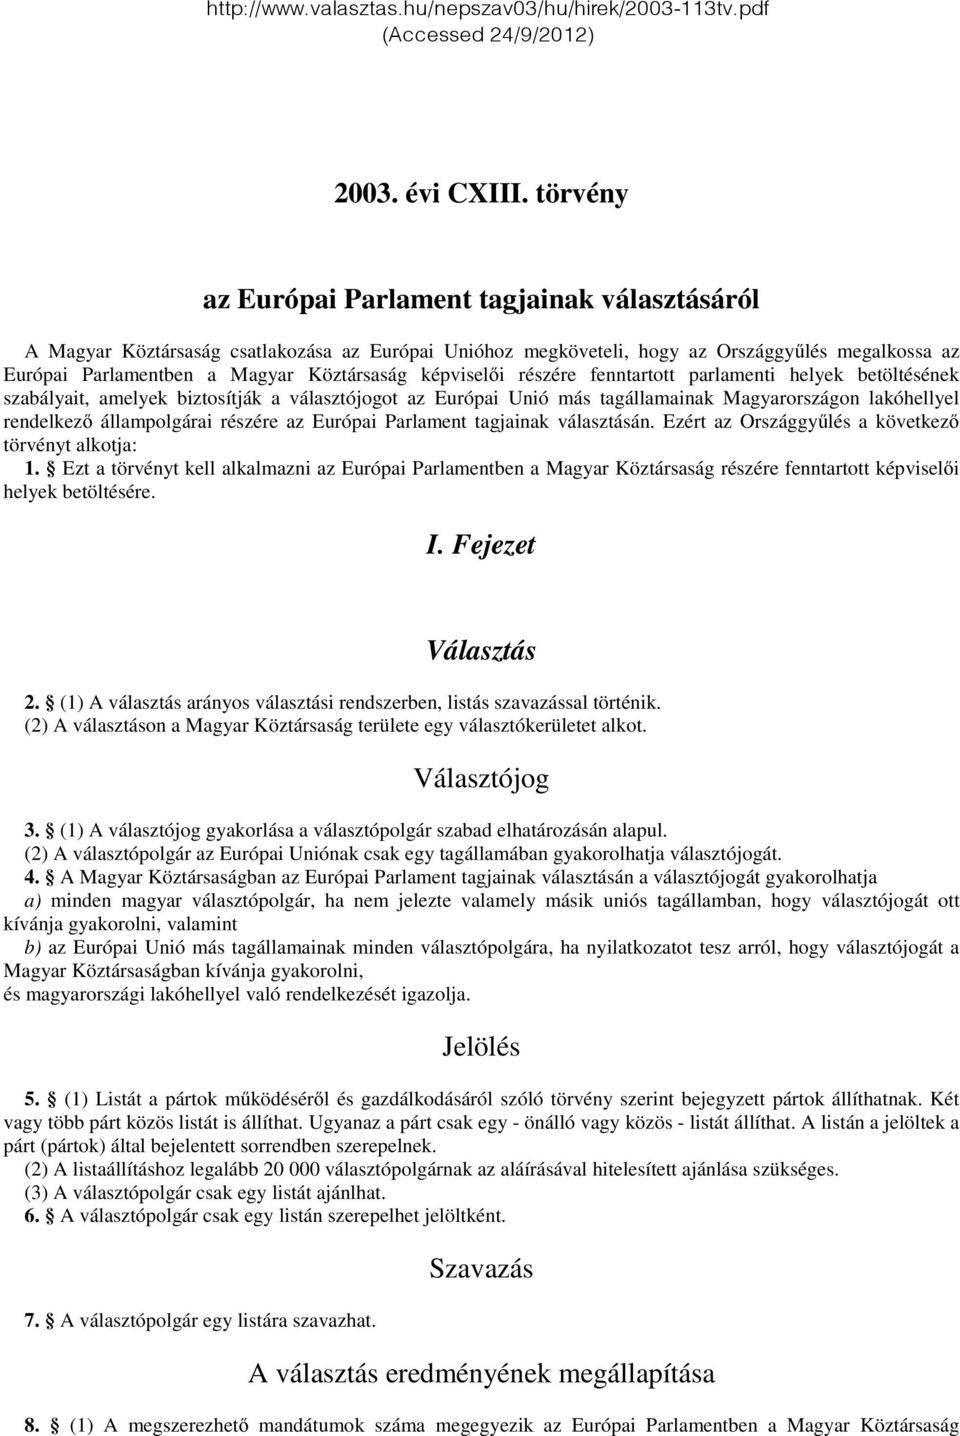 képviselői részére fenntartott parlamenti helyek betöltésének szabályait, amelyek biztosítják a választójogot az Európai Unió más tagállamainak Magyarországon lakóhellyel rendelkező állampolgárai